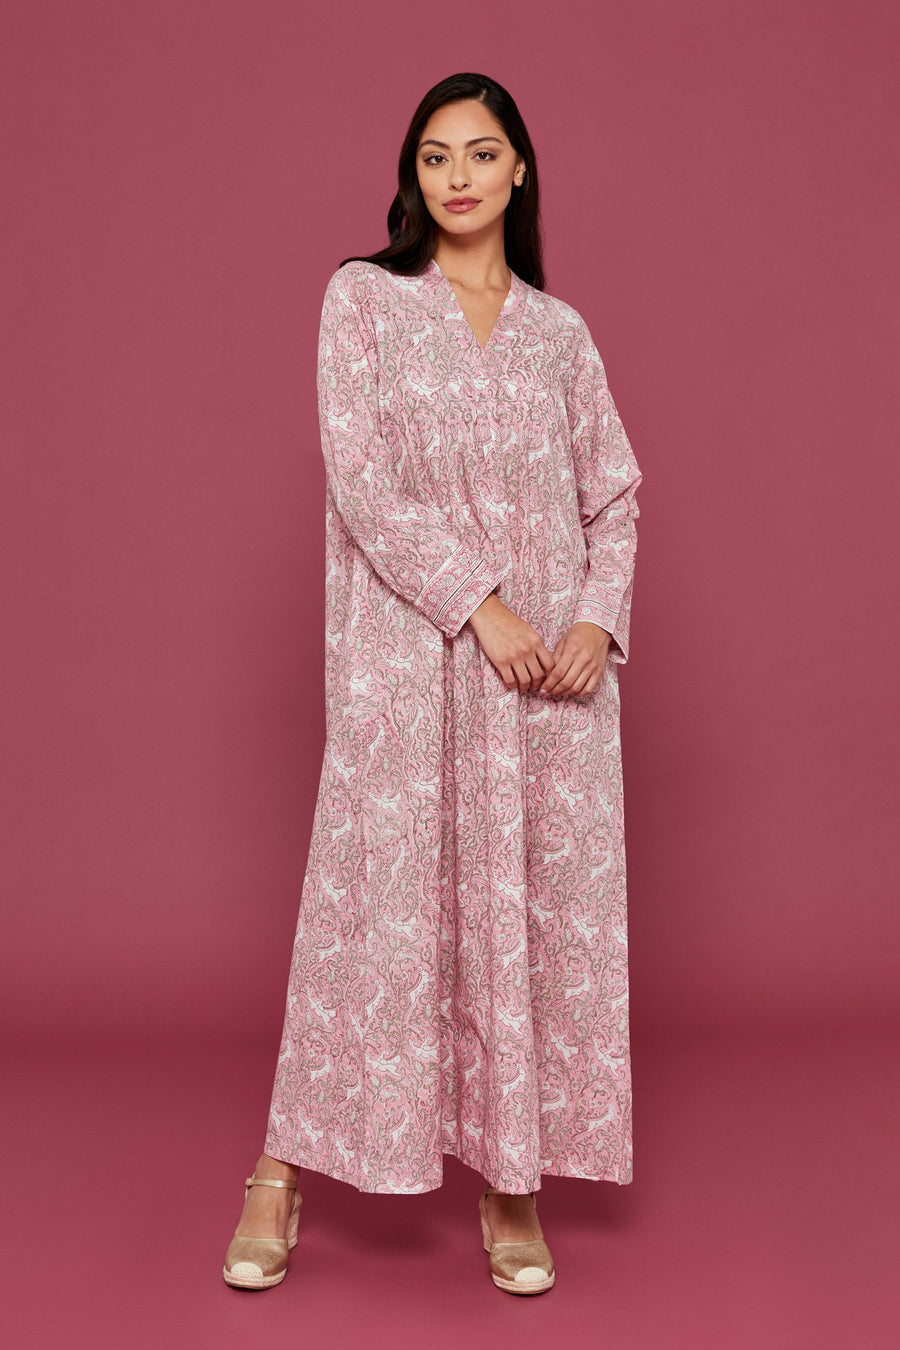 Hiran Block Printed Dress in Pale Pink